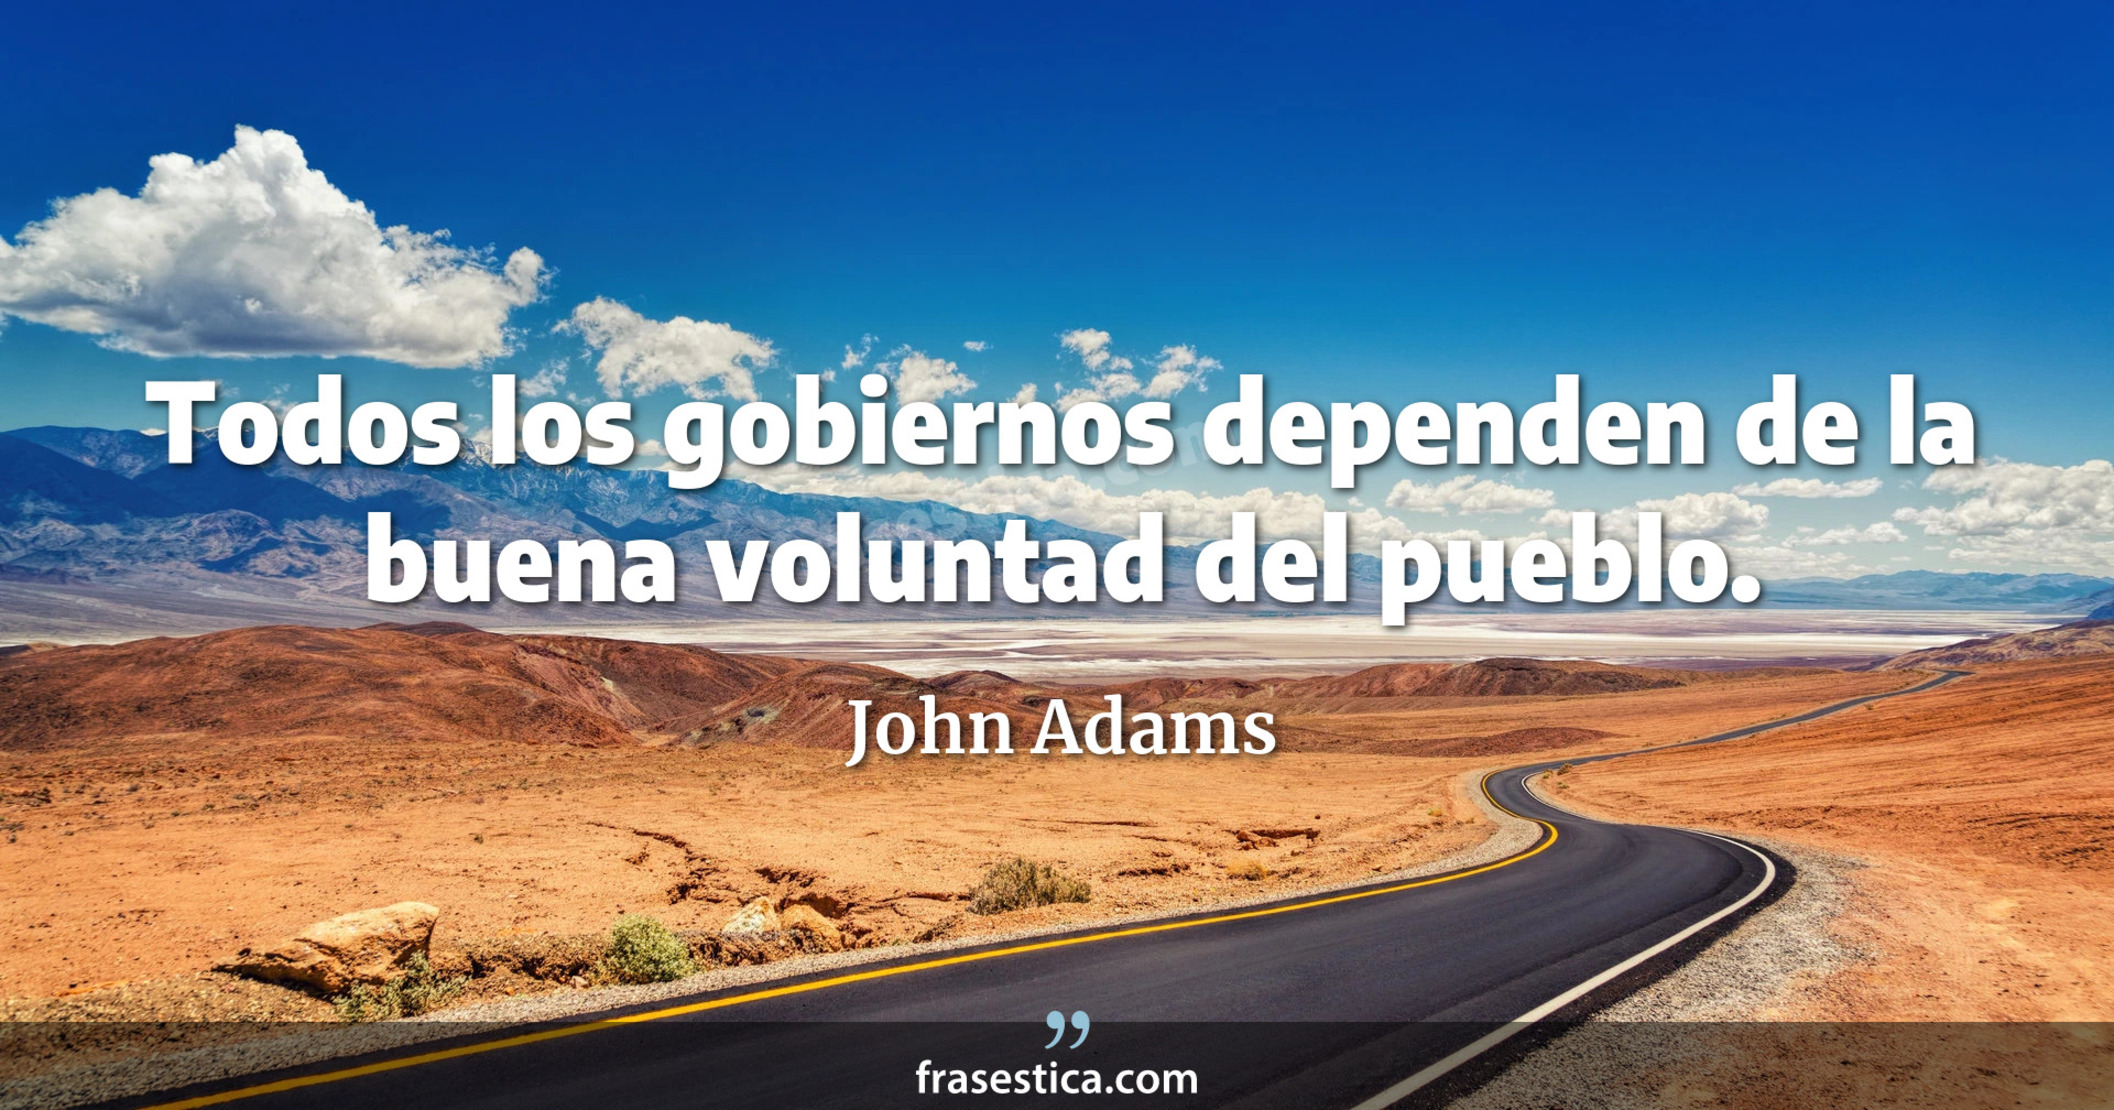 Todos los gobiernos dependen de la buena voluntad del pueblo. - John Adams